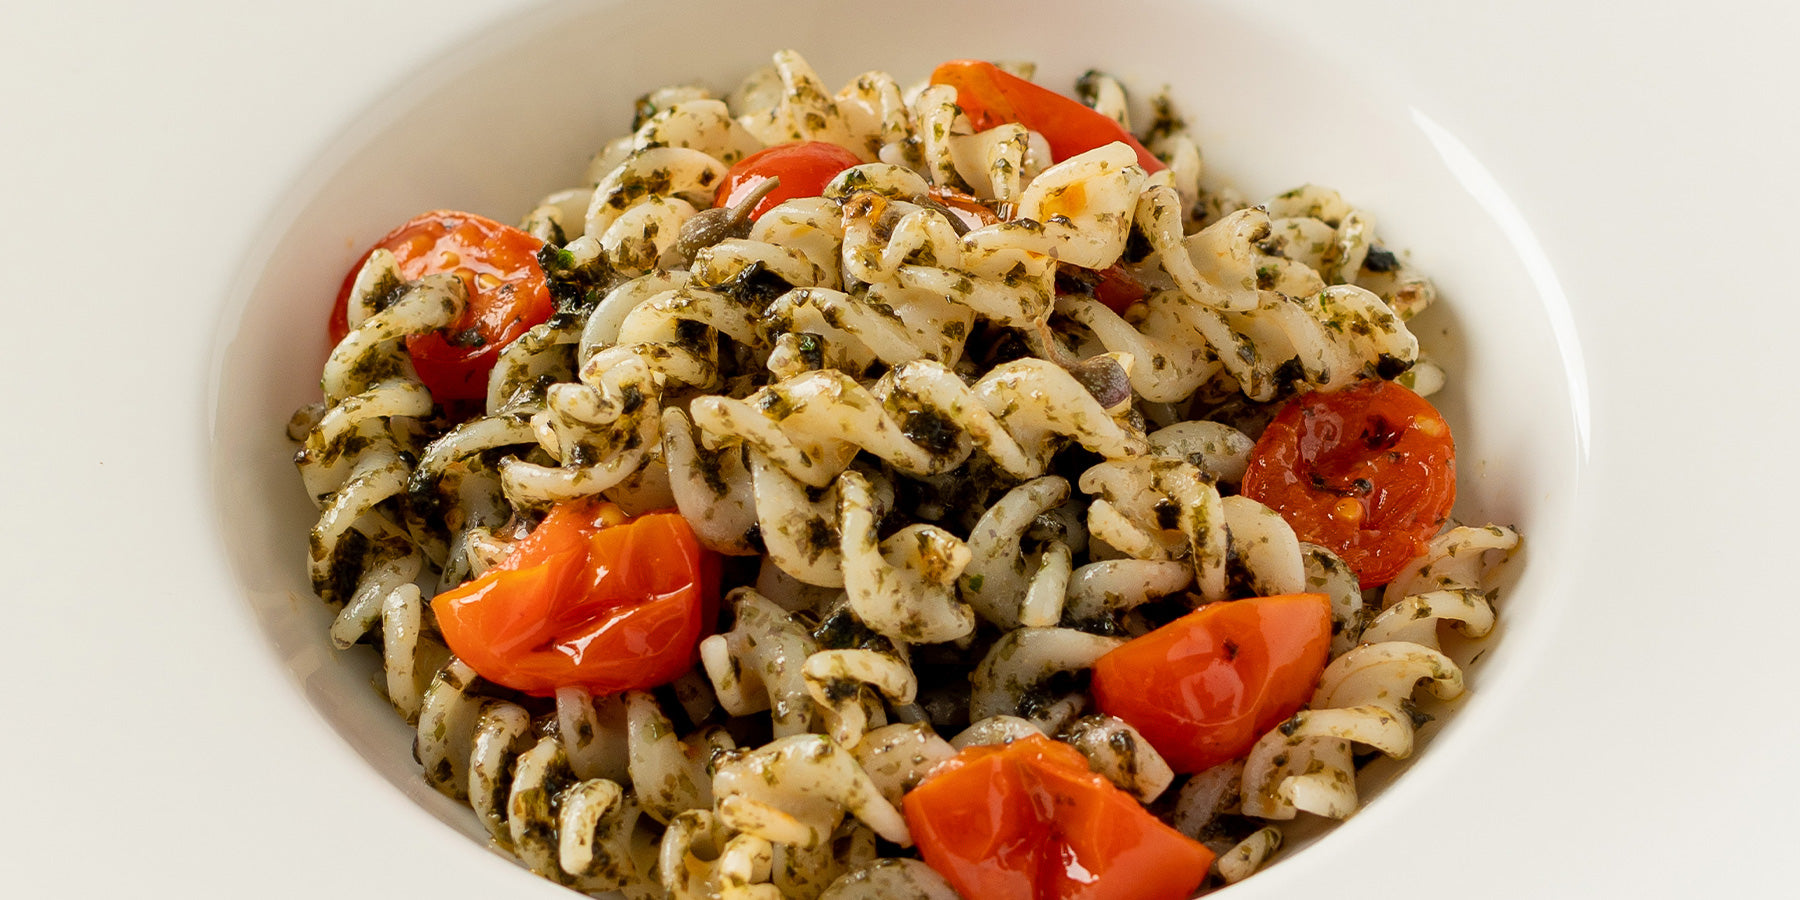 White Corn Fusilli “Alla Puttanesca” with Nori Seaweed Pesto, and Capers